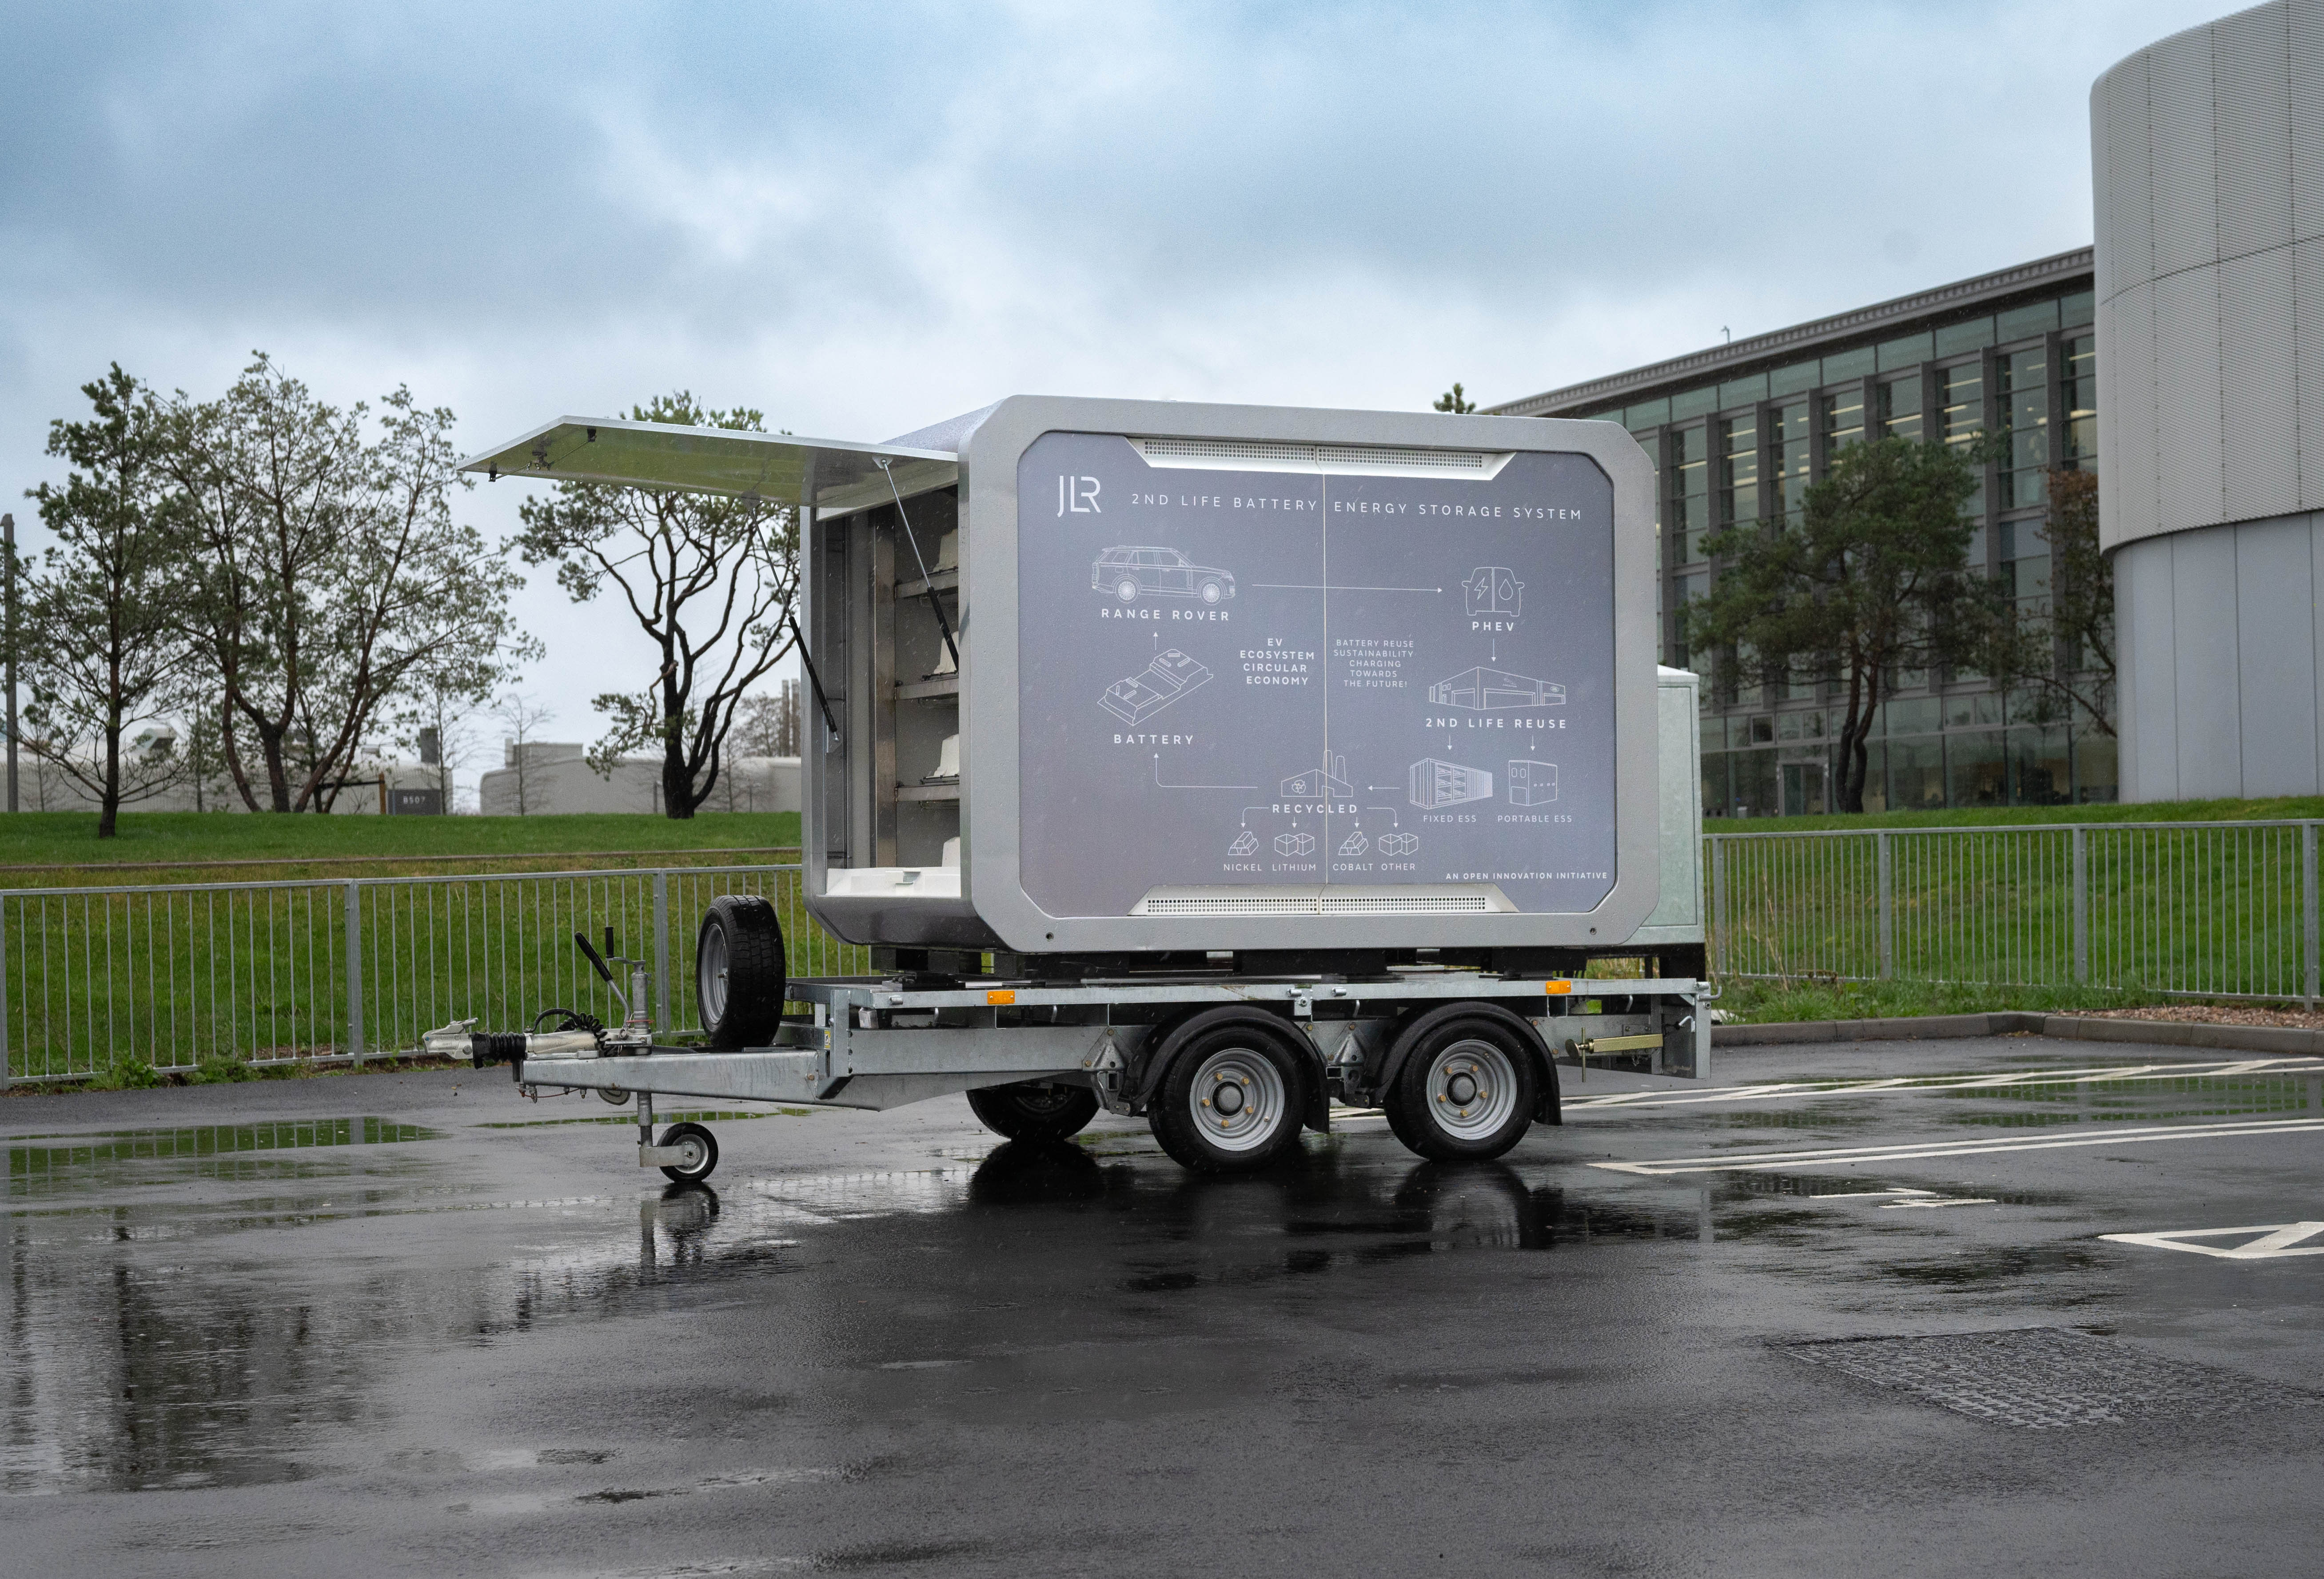 شركة JLR تعمل على تقليل الانبعاثات من خلال استخدام أول نظام لتخزين طاقة البطارية وتوفير قدرة الشحن أثناء التنقل باستخدام بطاريات رينج روڤر المعاد استخدامها